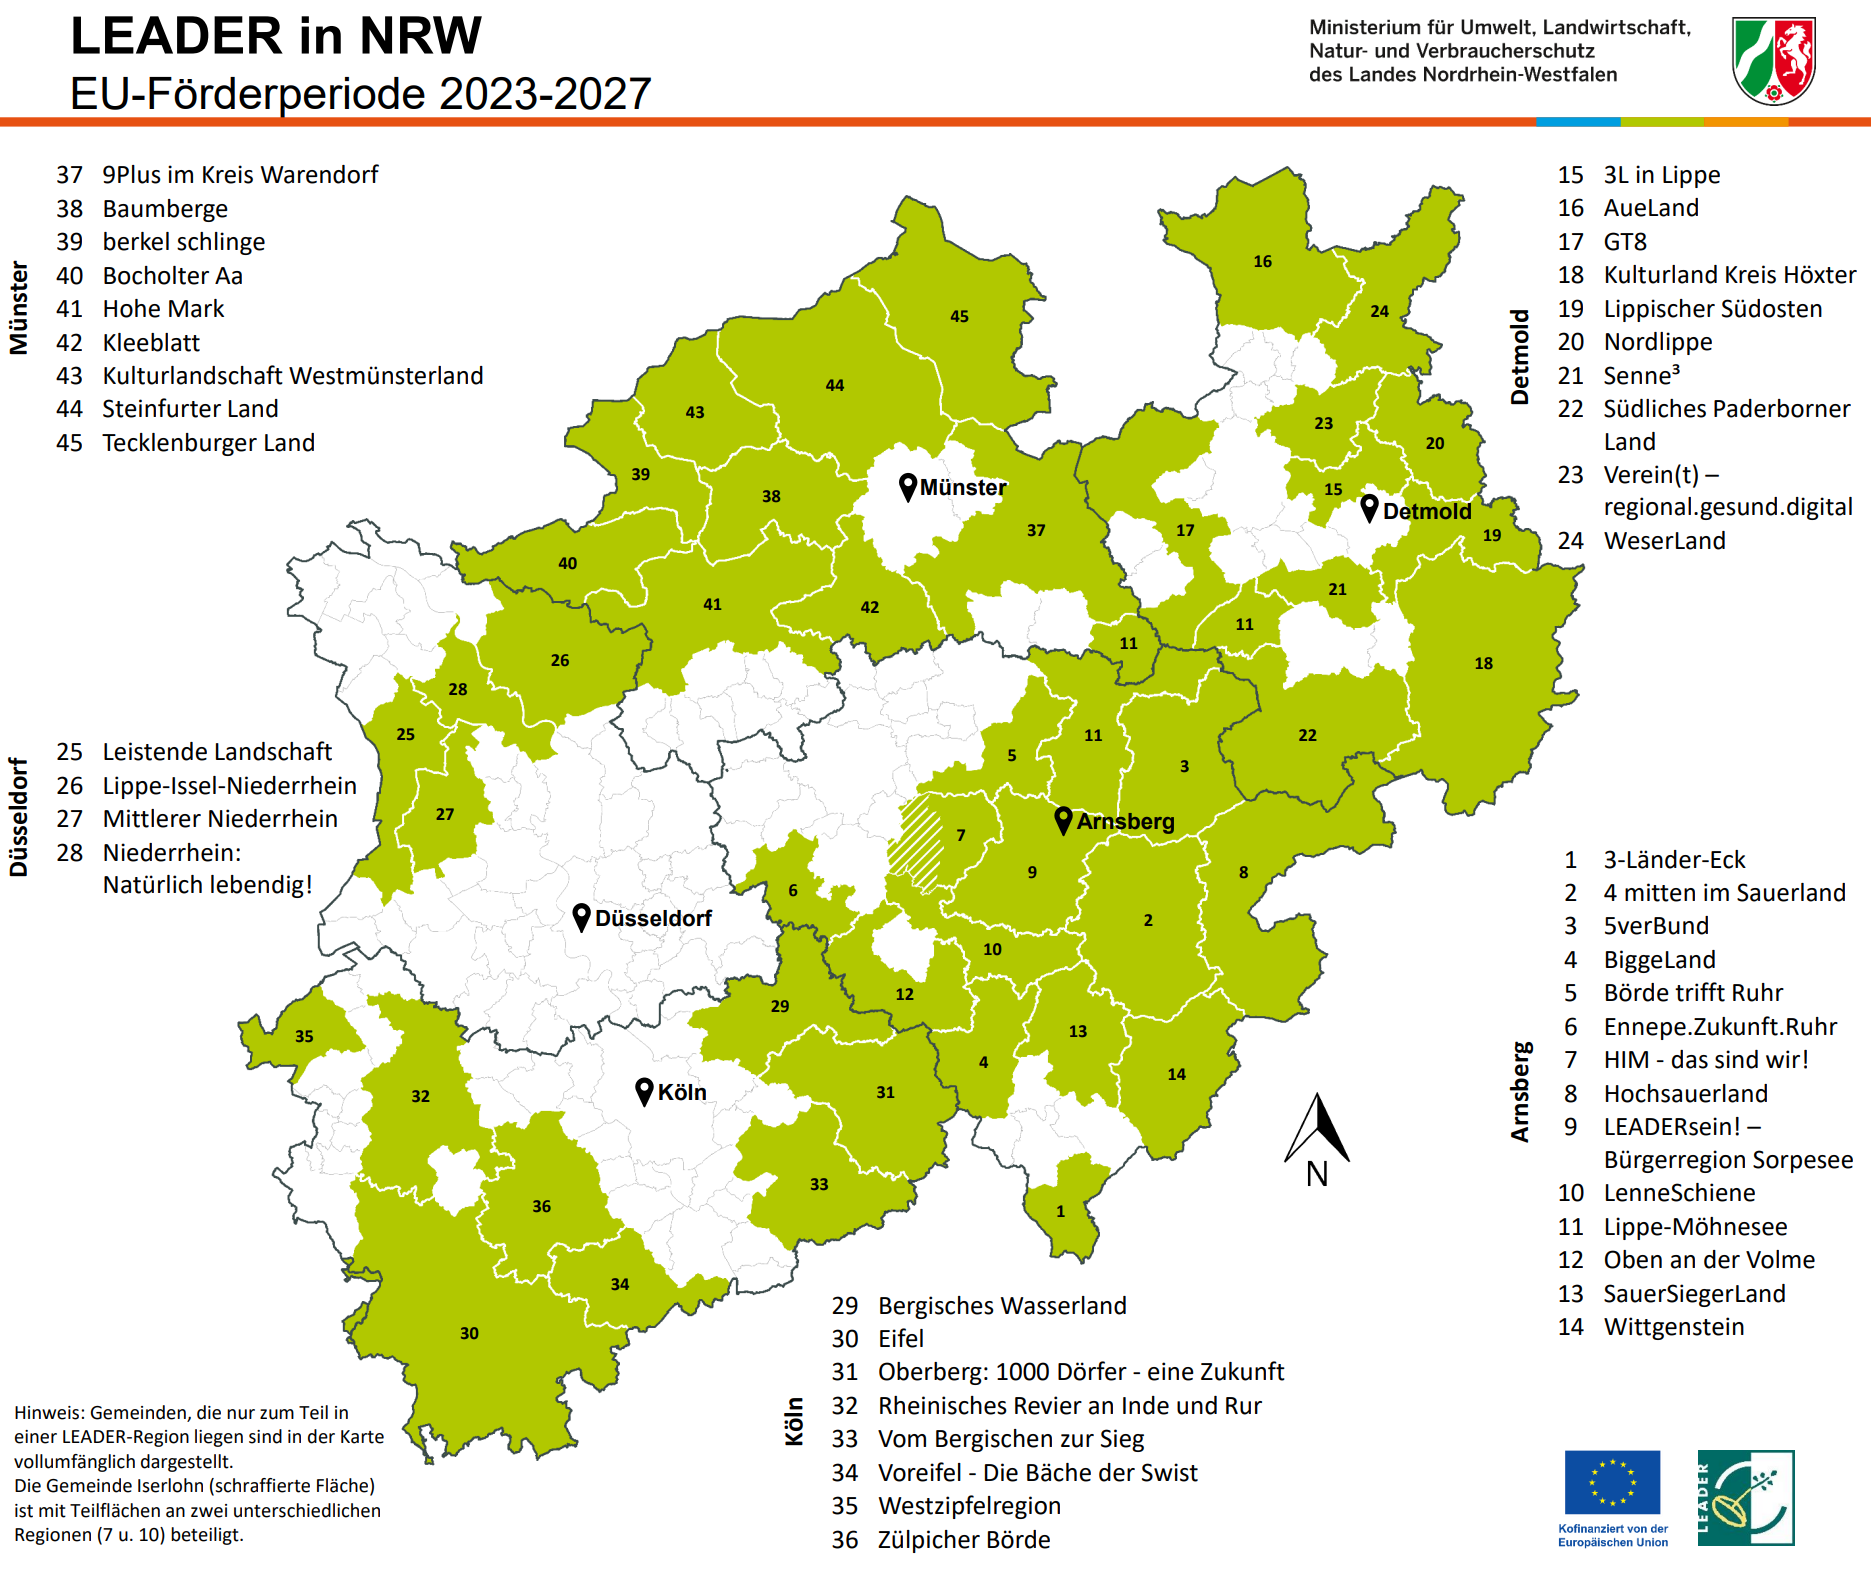 LEADER-Regionen in NRW